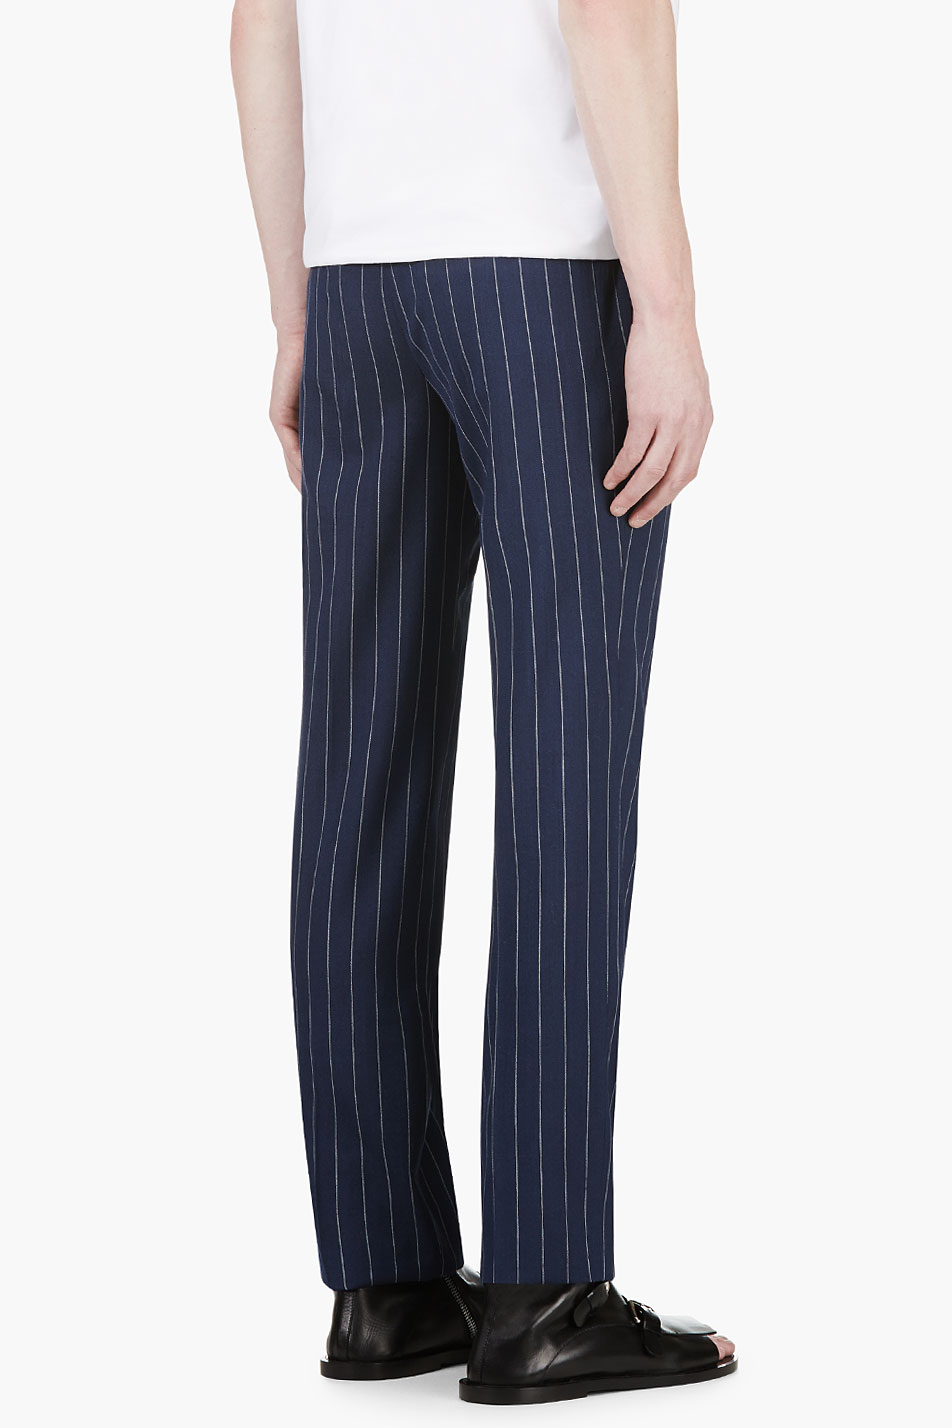 Juun.J Navy Wool Pinstripe Trousers in Blue for Men - Lyst